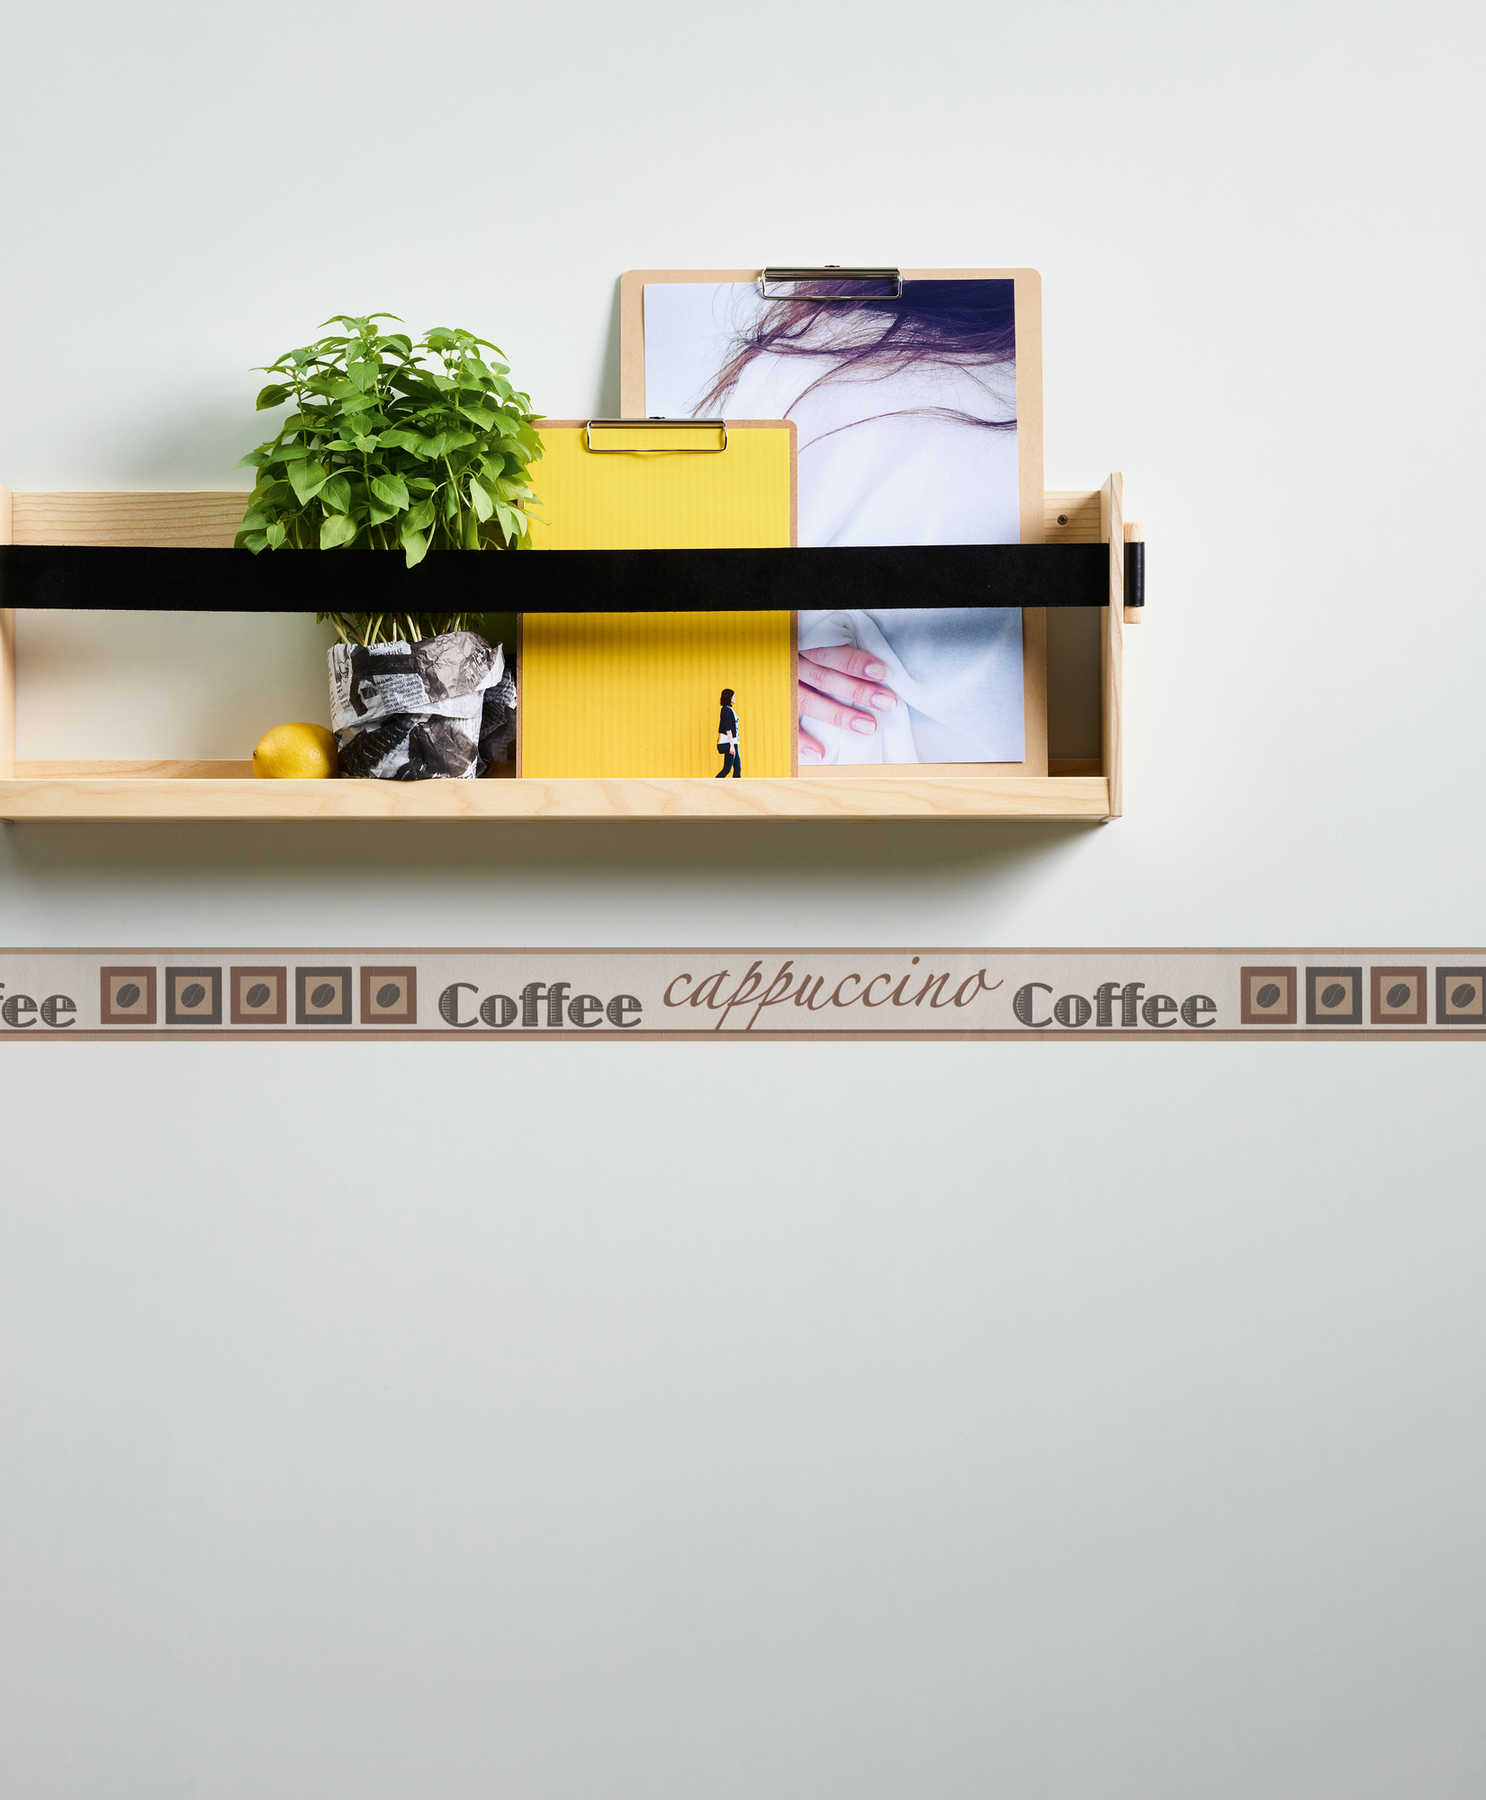             Borte mit Kaffee-Motiv und Typographie für die Küche – Braun, Beige, Creme
        